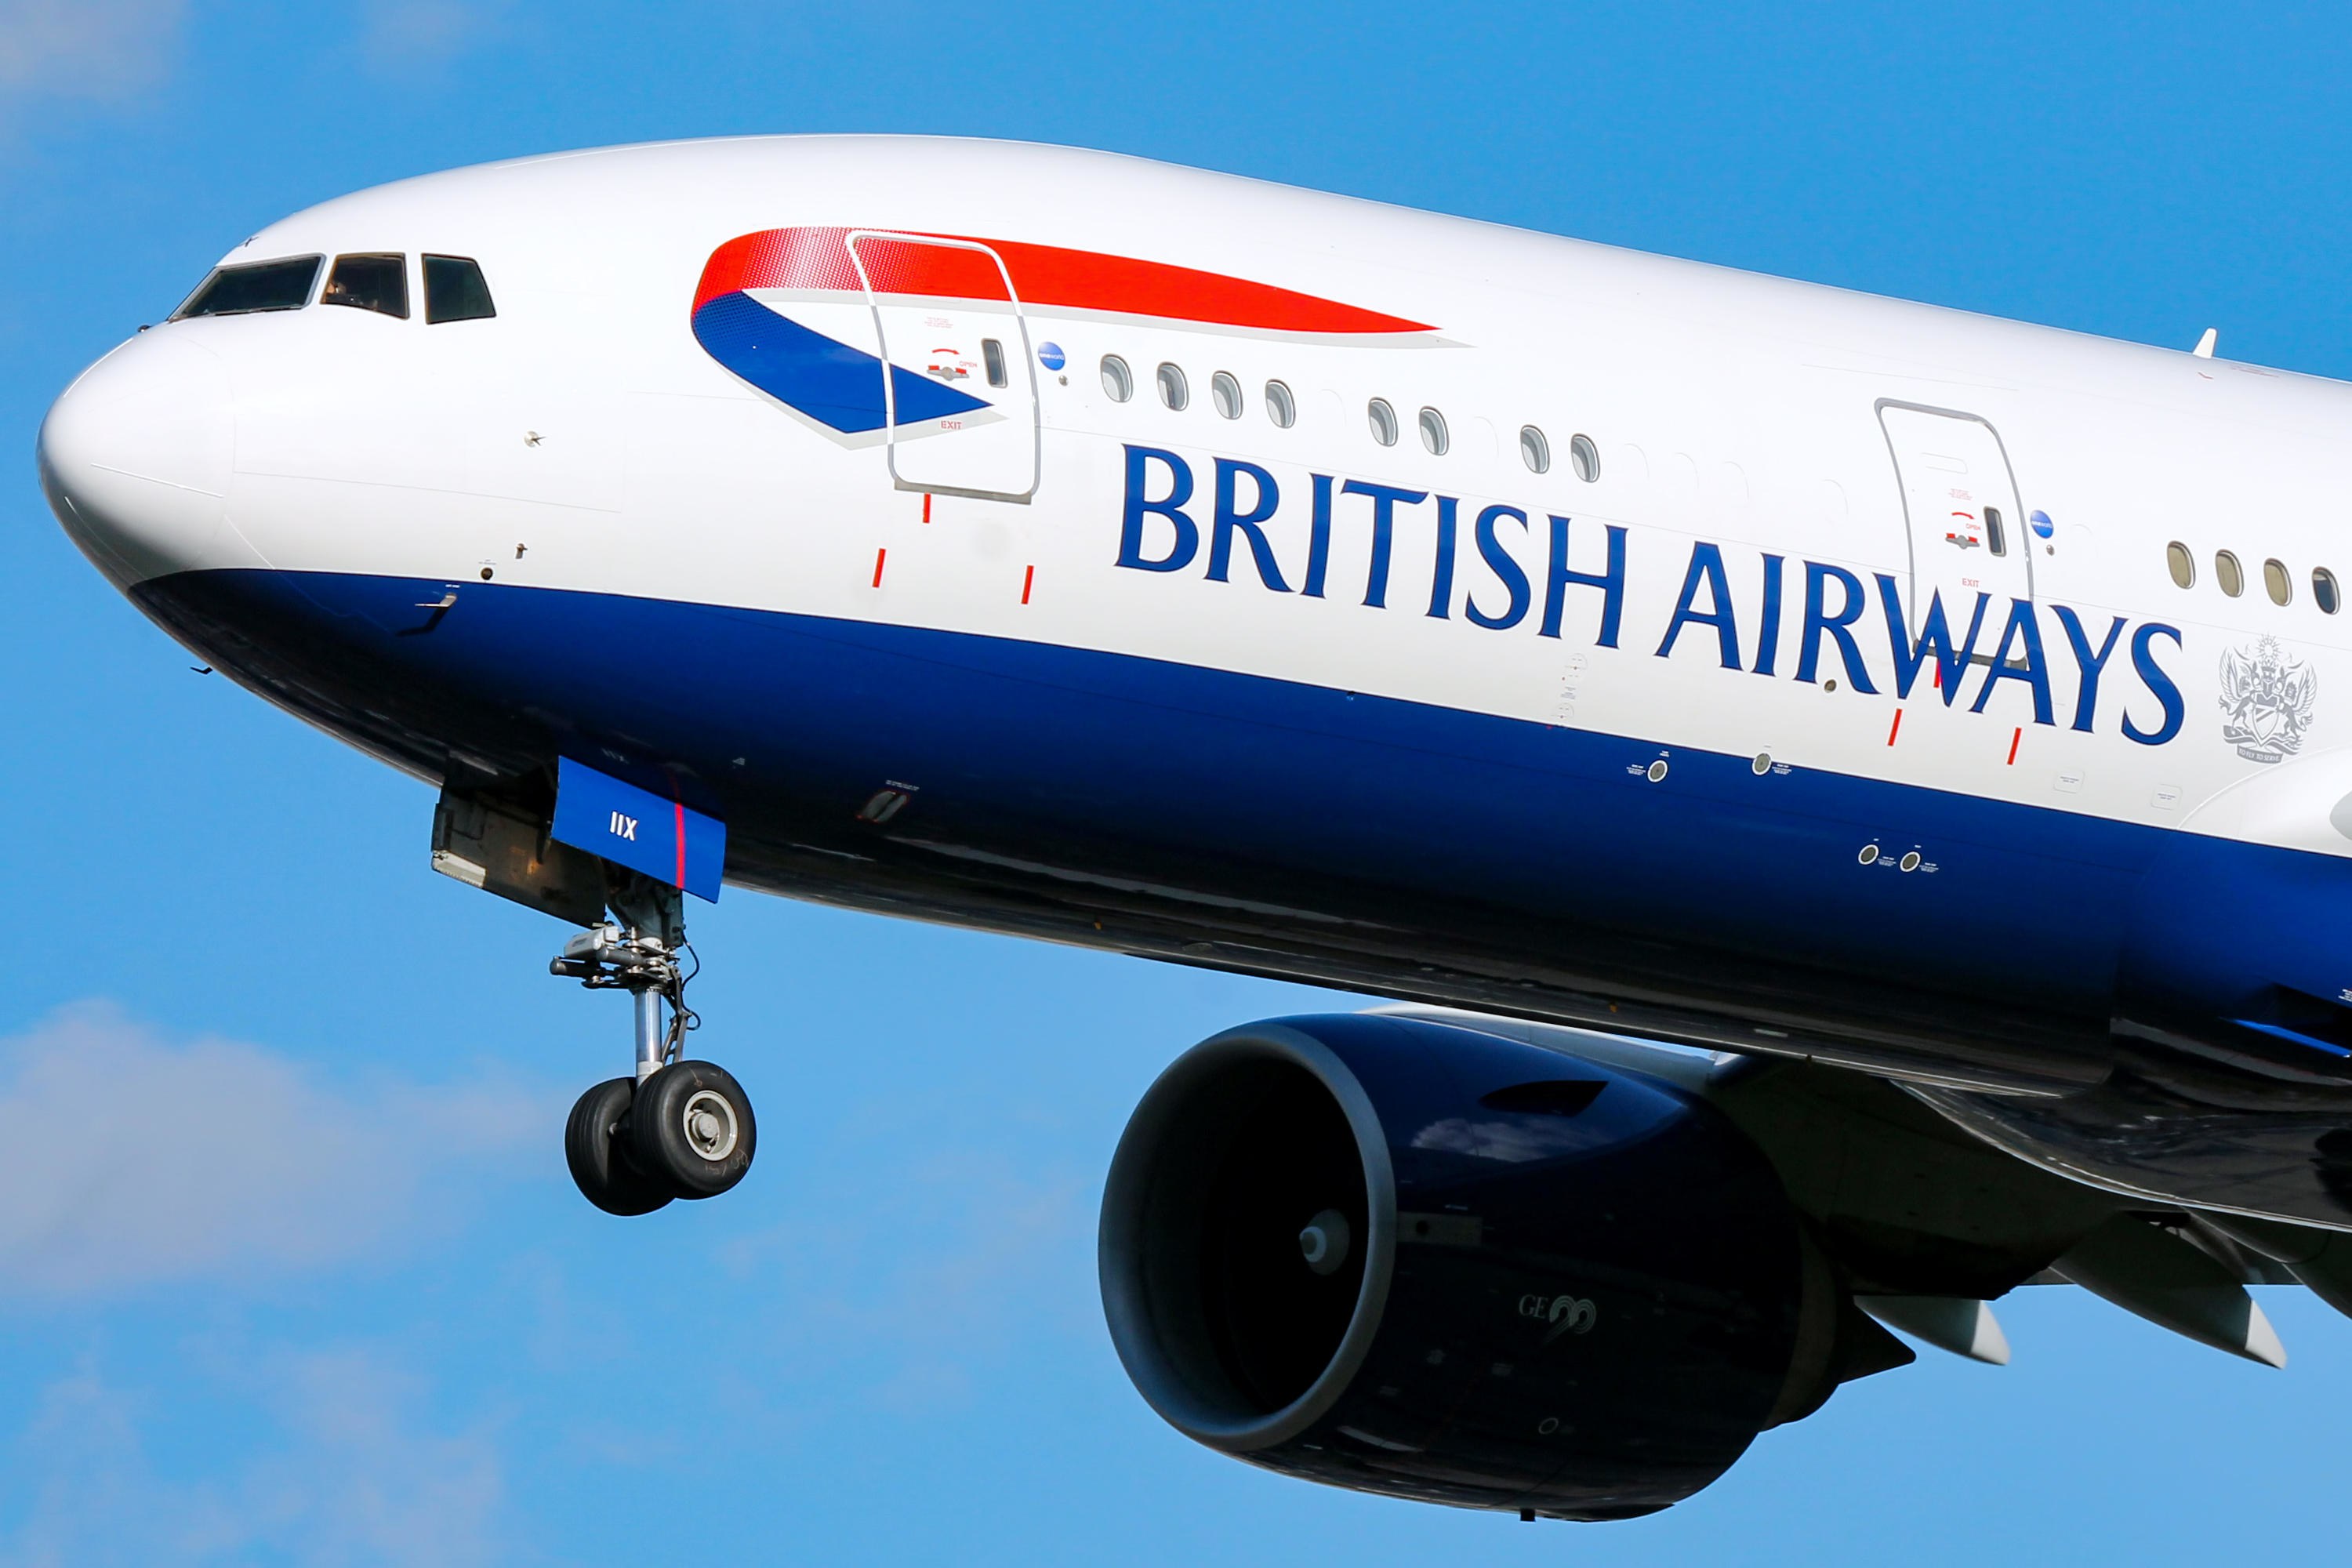 Προβλήματα για την British Airways - Πρόστιμο 240 εκατ. ευρώ για διαρροή προσωπικών δεδομένων